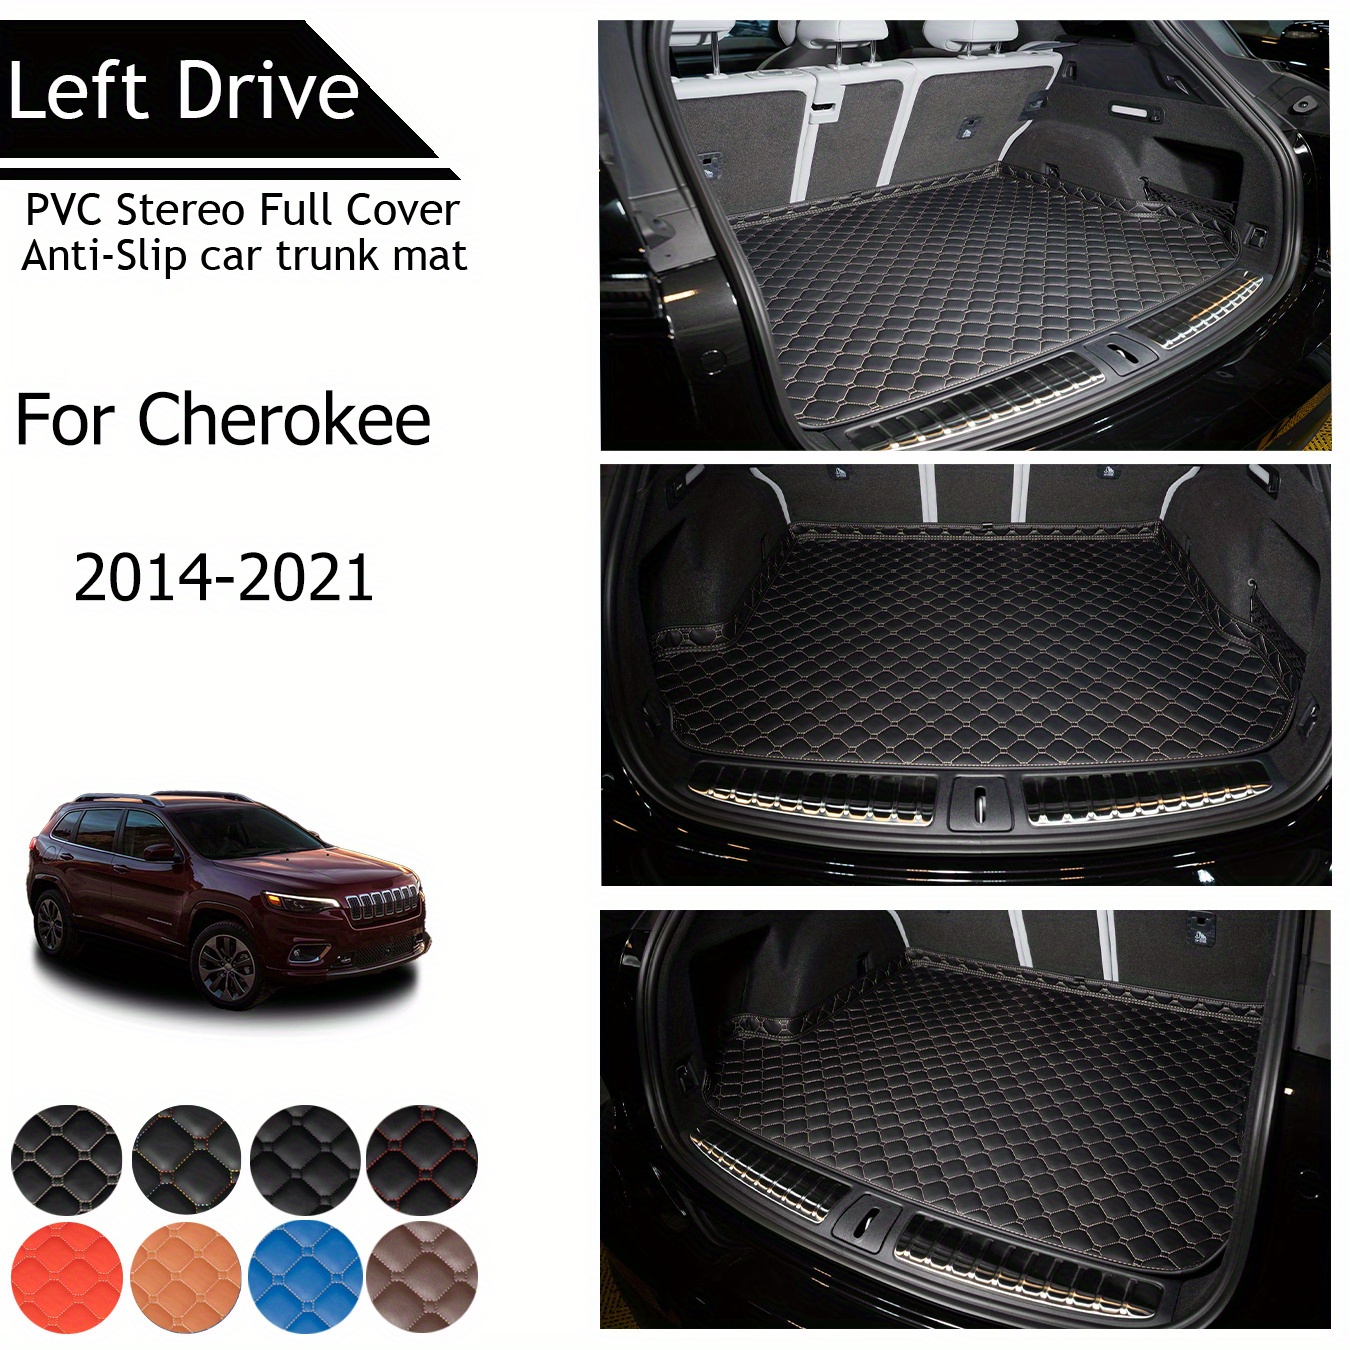 

Tegart [lhd] For Chero Kee For 2014-2021 3 Layer Pvc Stereo Full Cover Anti-slip Car Trunk Mat